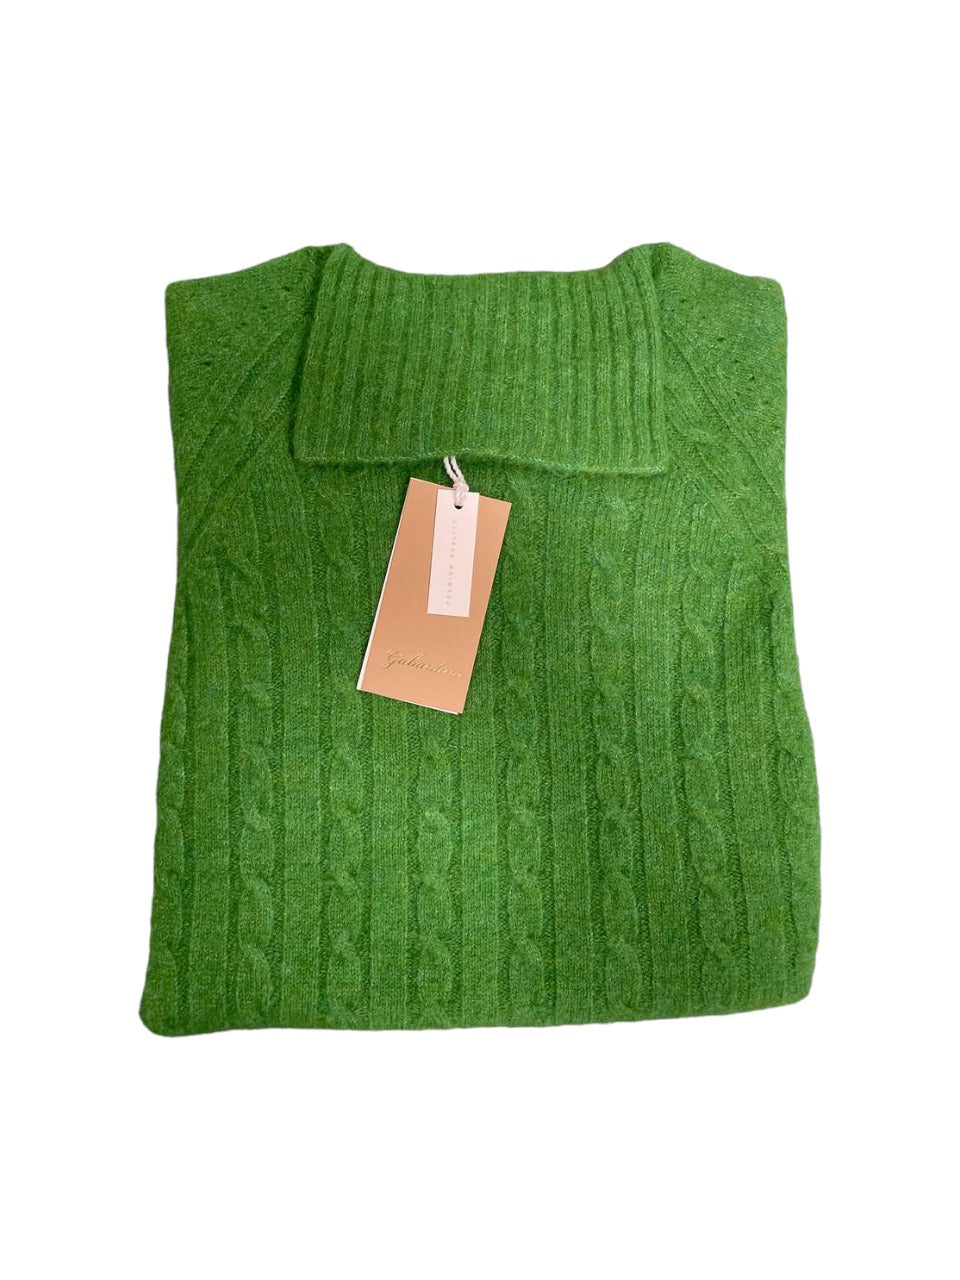 Women's Gabardine turtleneck sweater